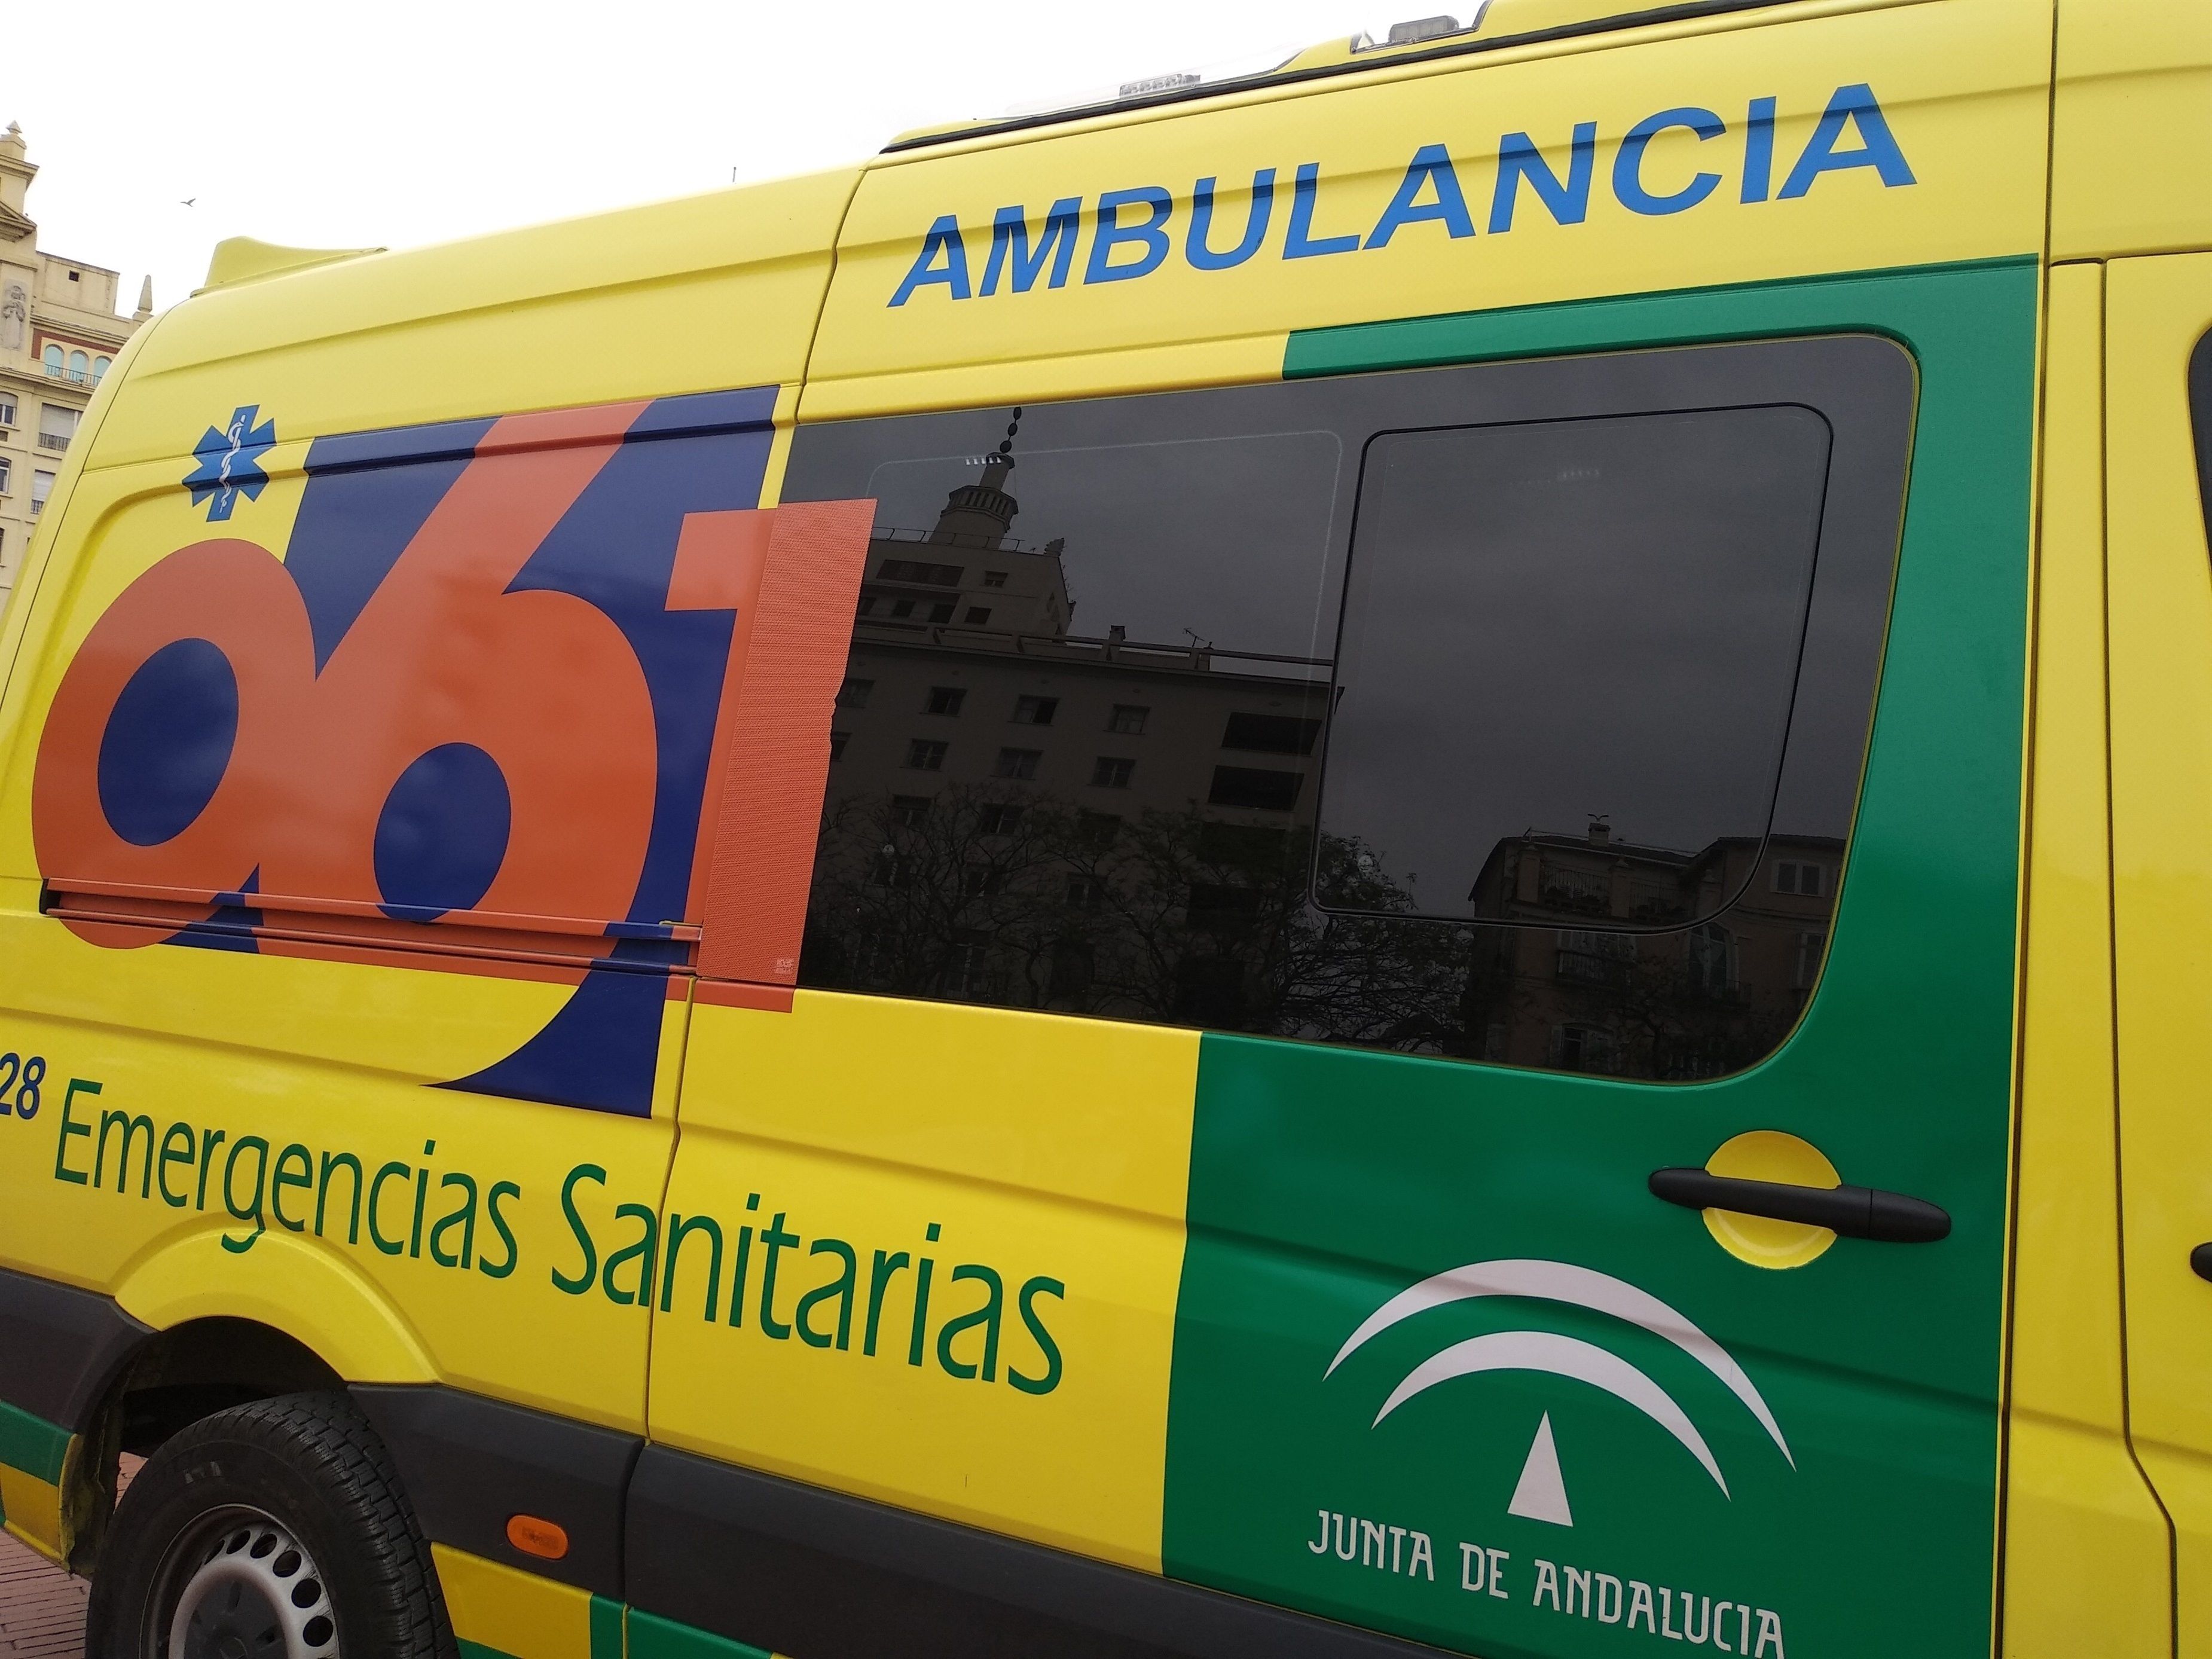 Ambulancia 061 / Europa Press